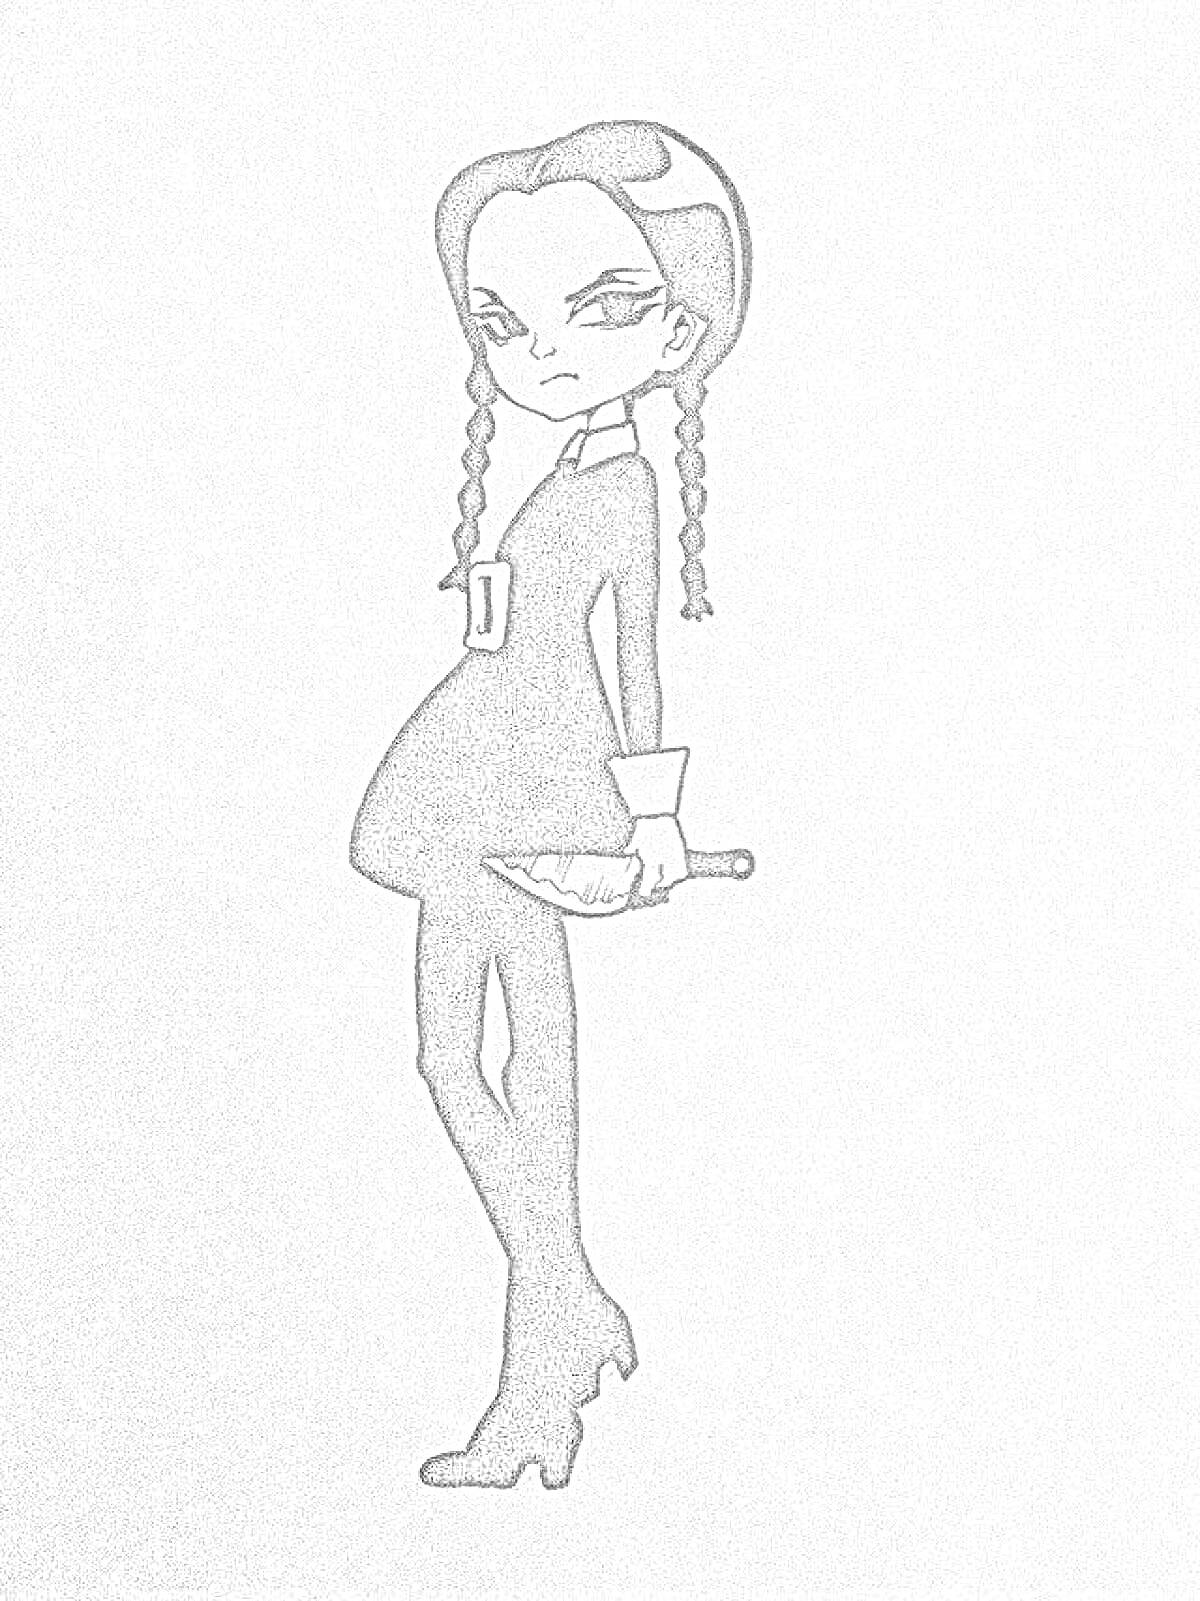 Раскраска Девочка в черном платье со светлыми воротником и манжетами, с двумя косами. Она держит нож.